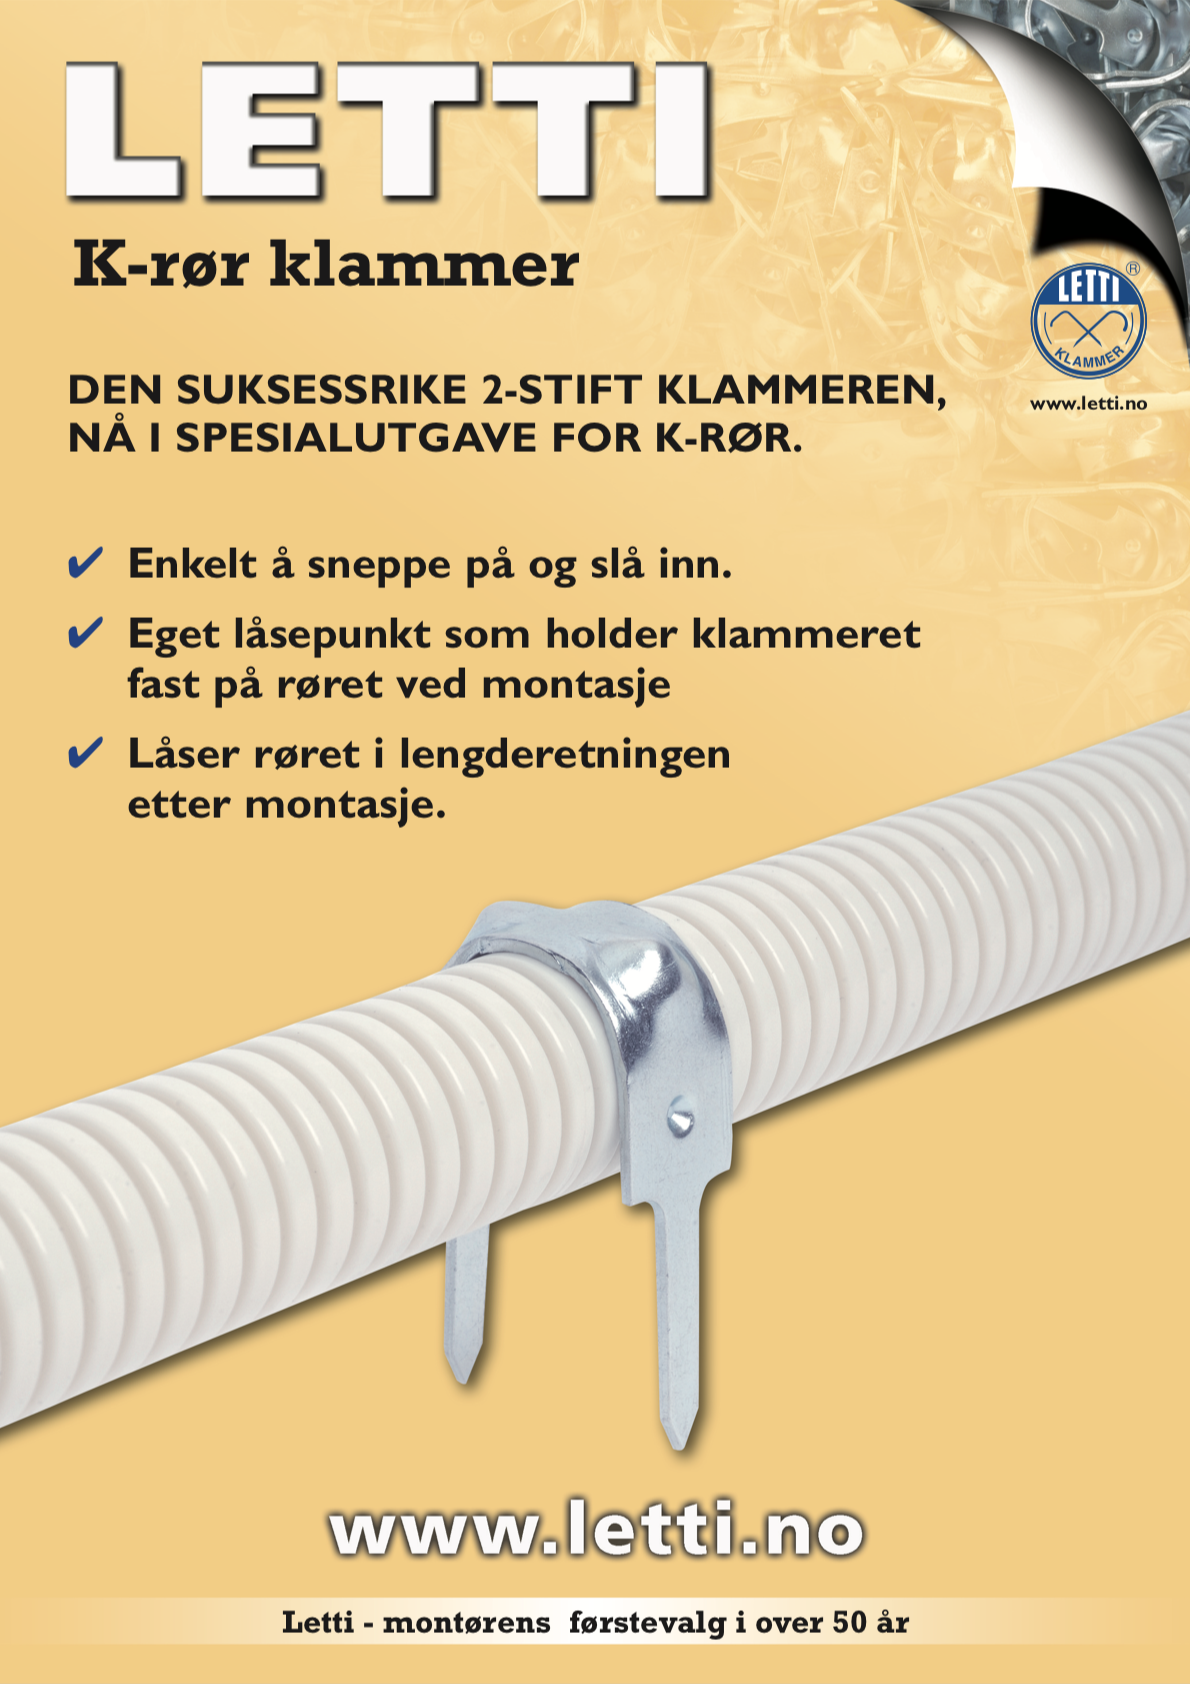 Plakat om letti k-rørklammer